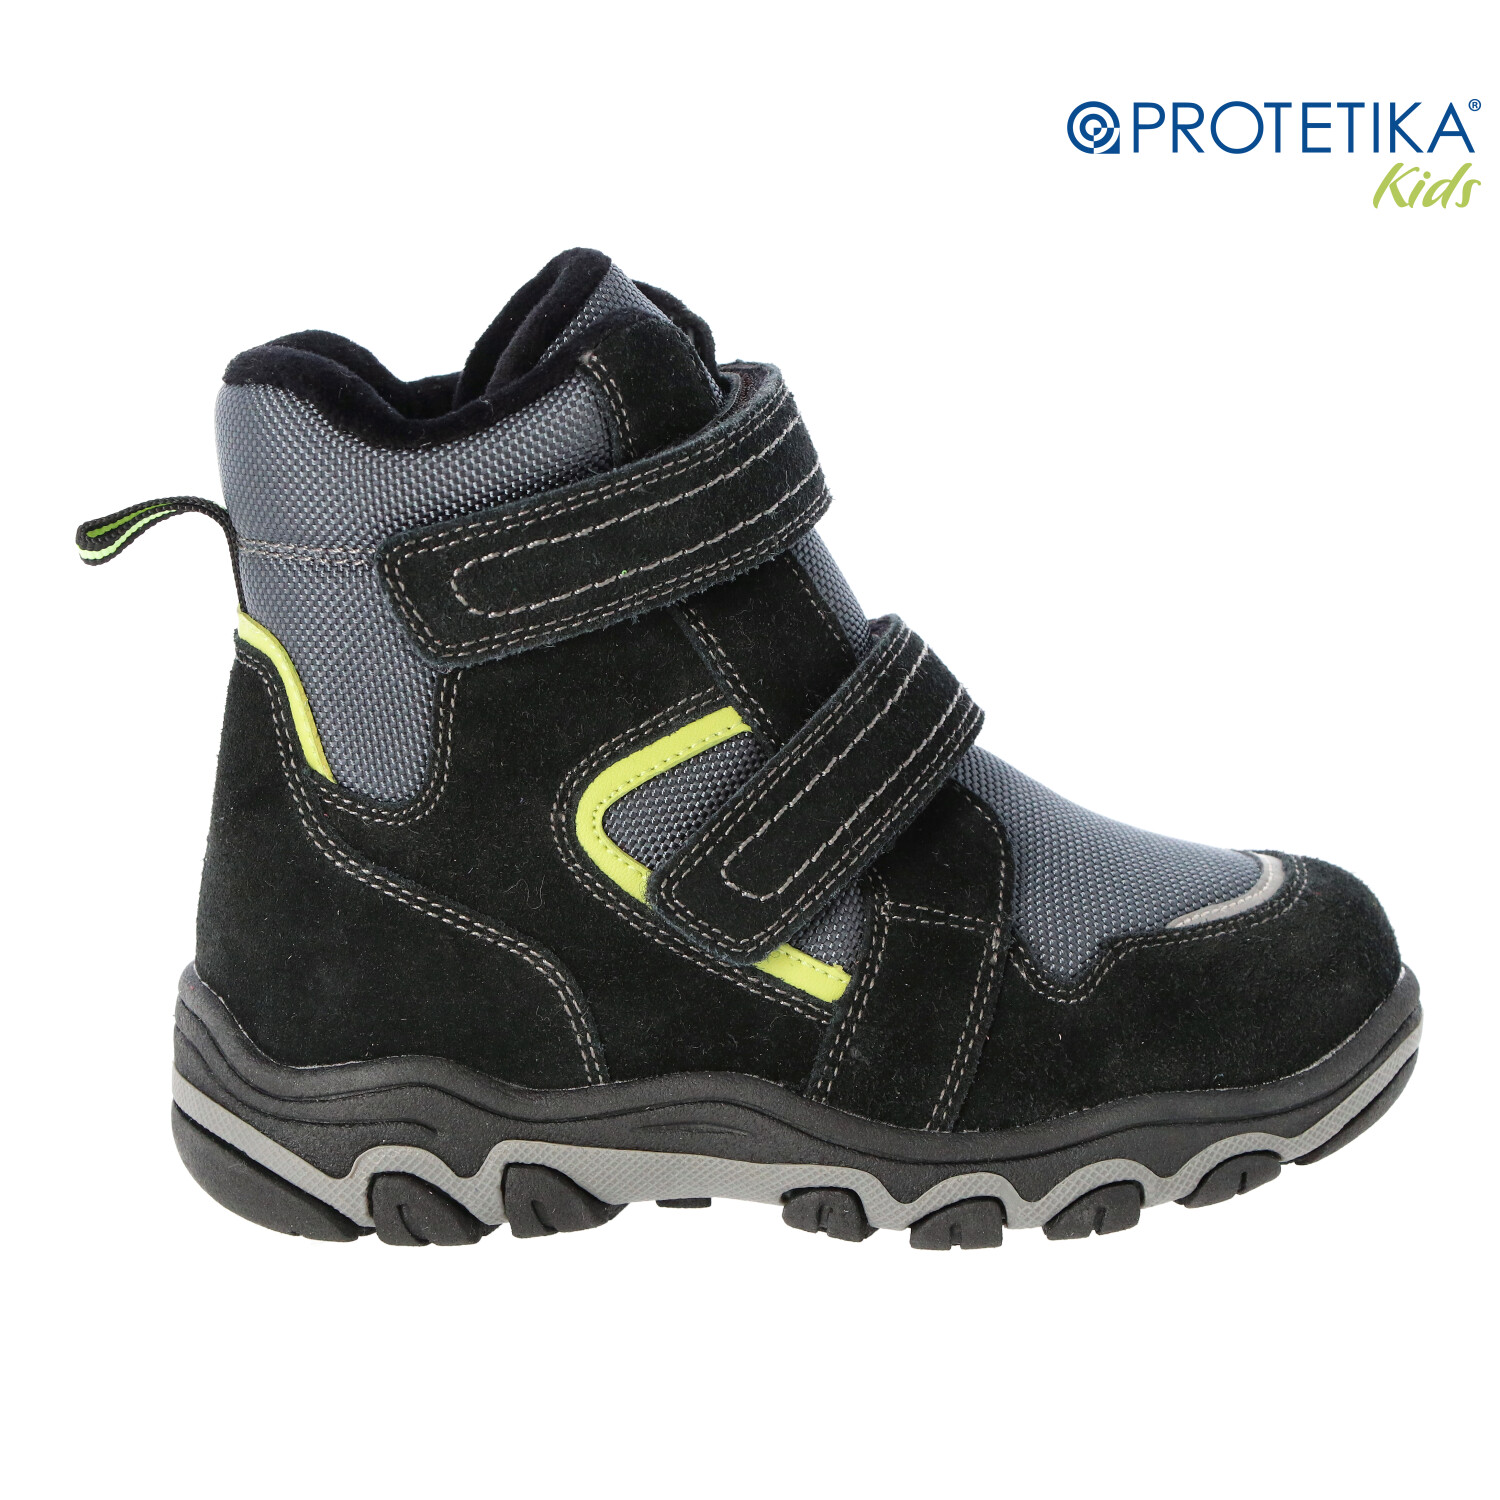 Protetika - zimné topánky s membránou PRO-tex ERLAND black - zateplené